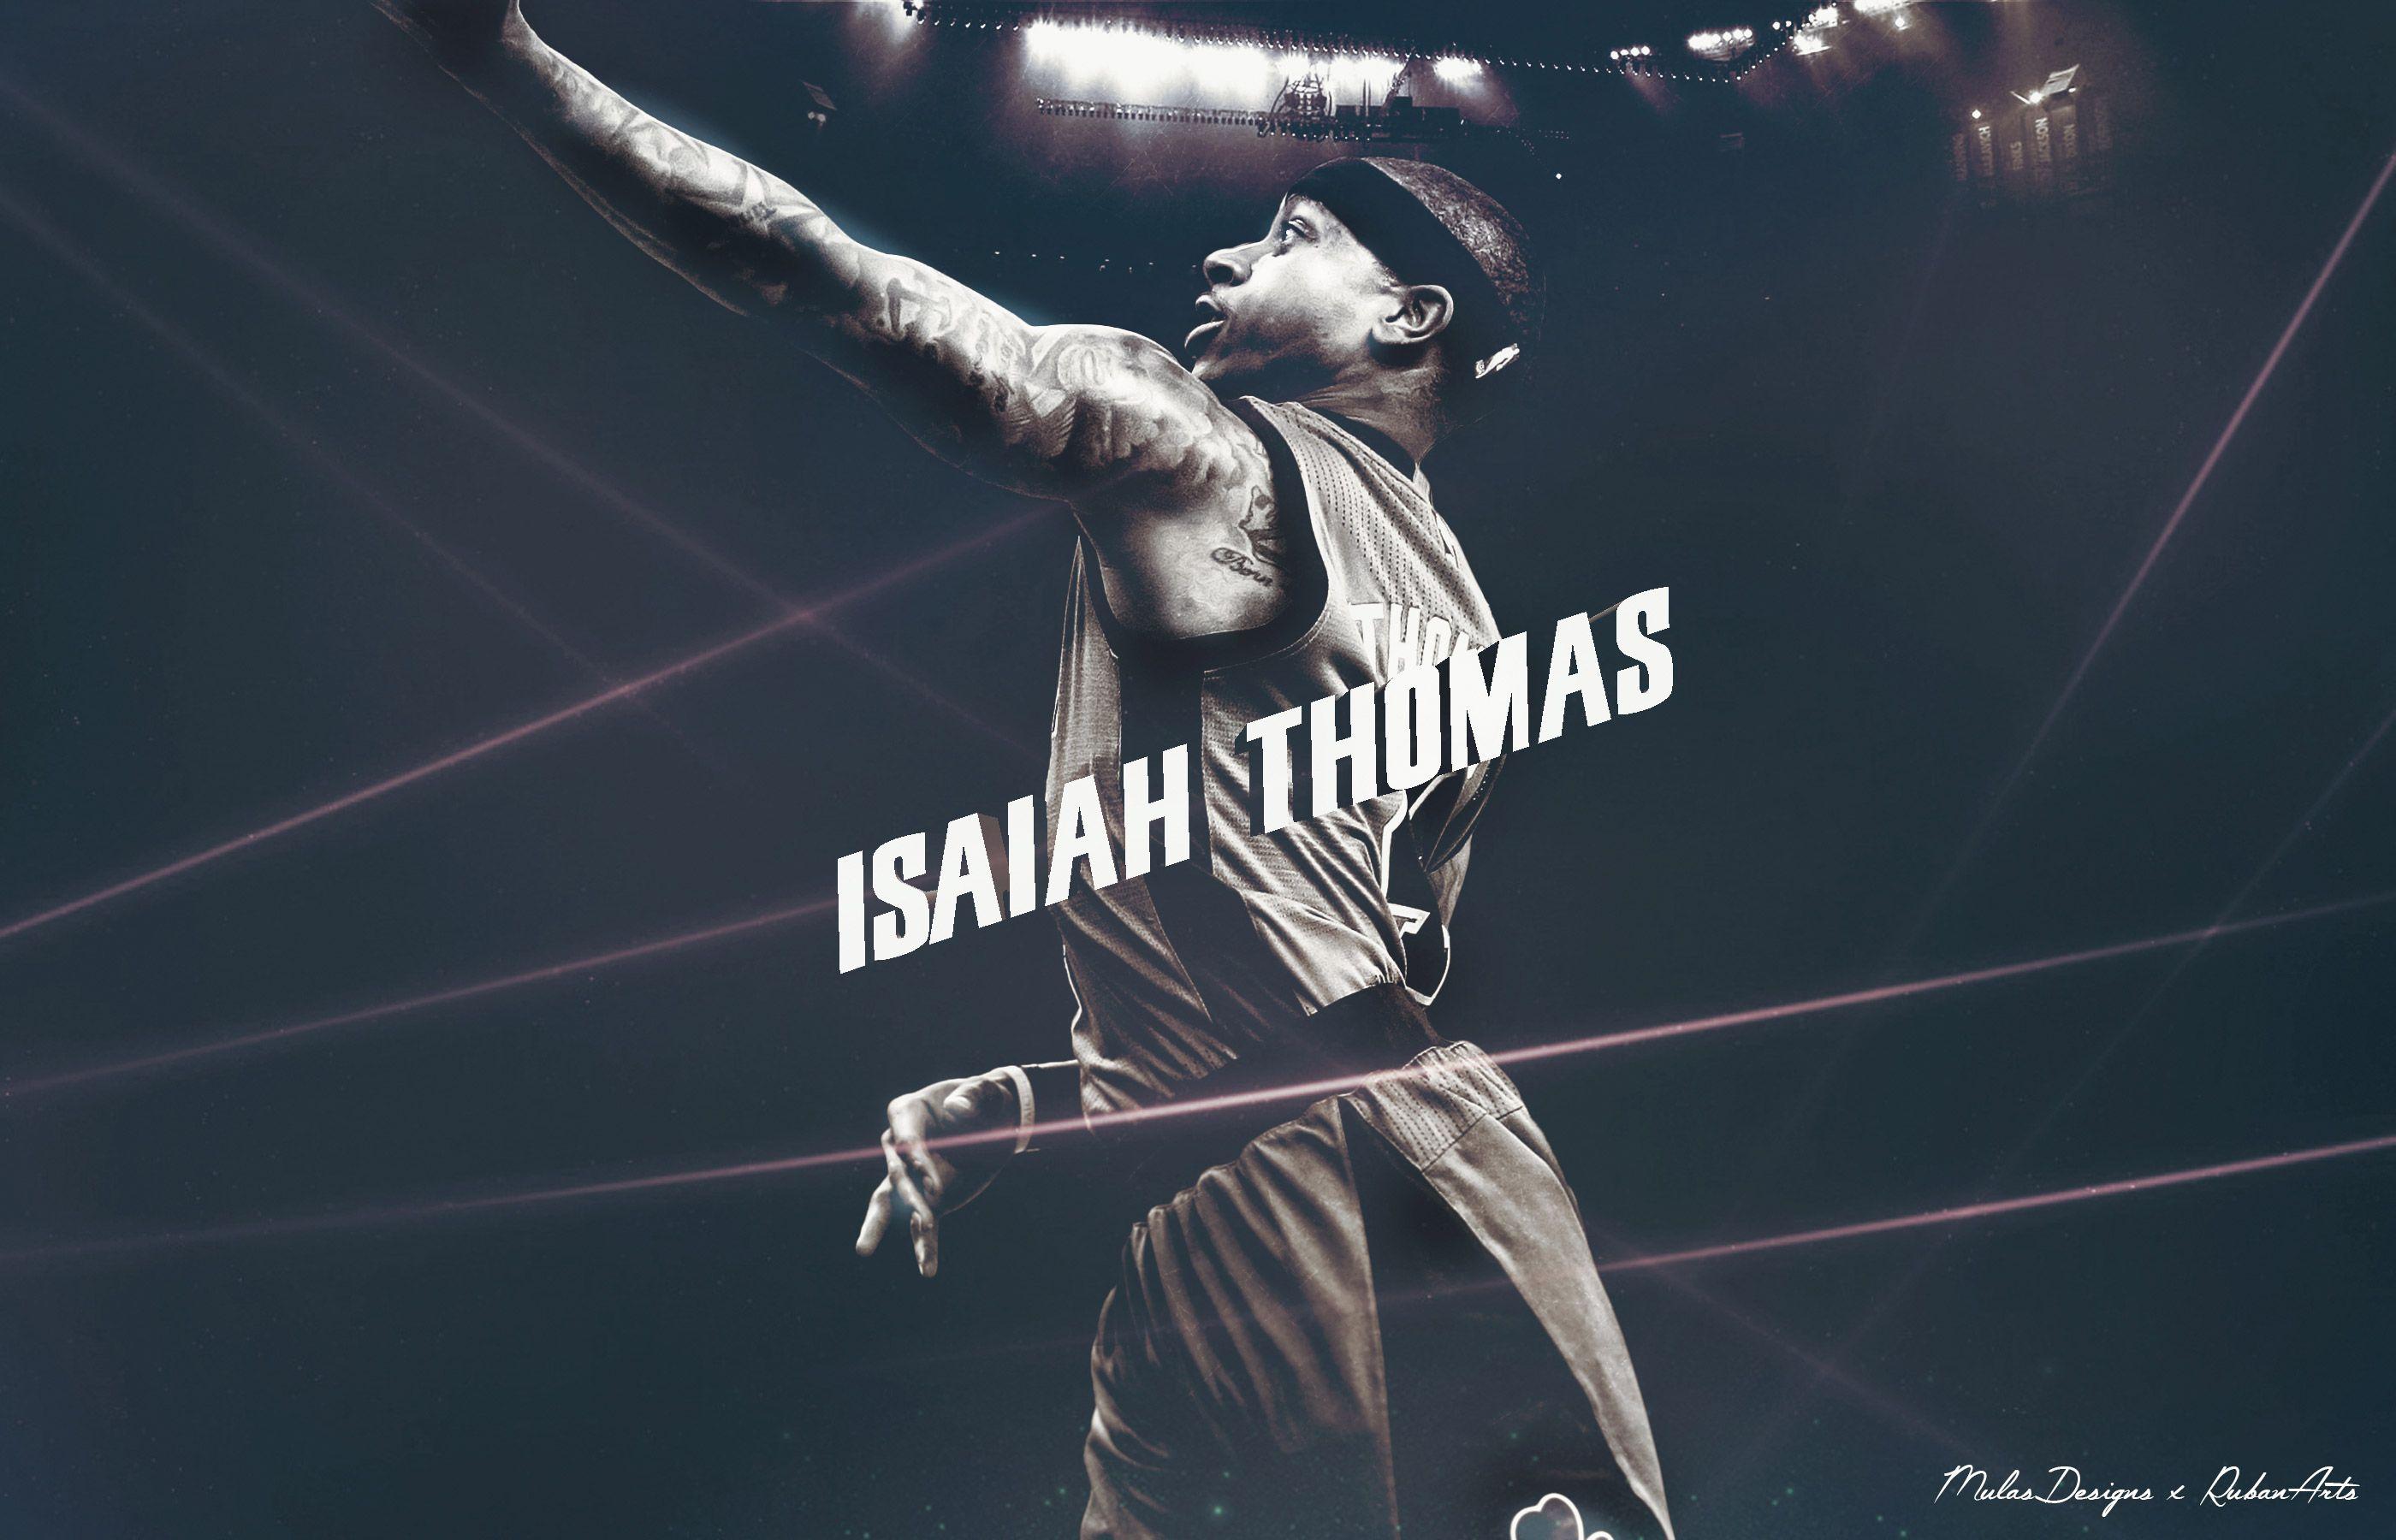 Isaiah Thomas Wallpaper. Basketball Wallpaper at